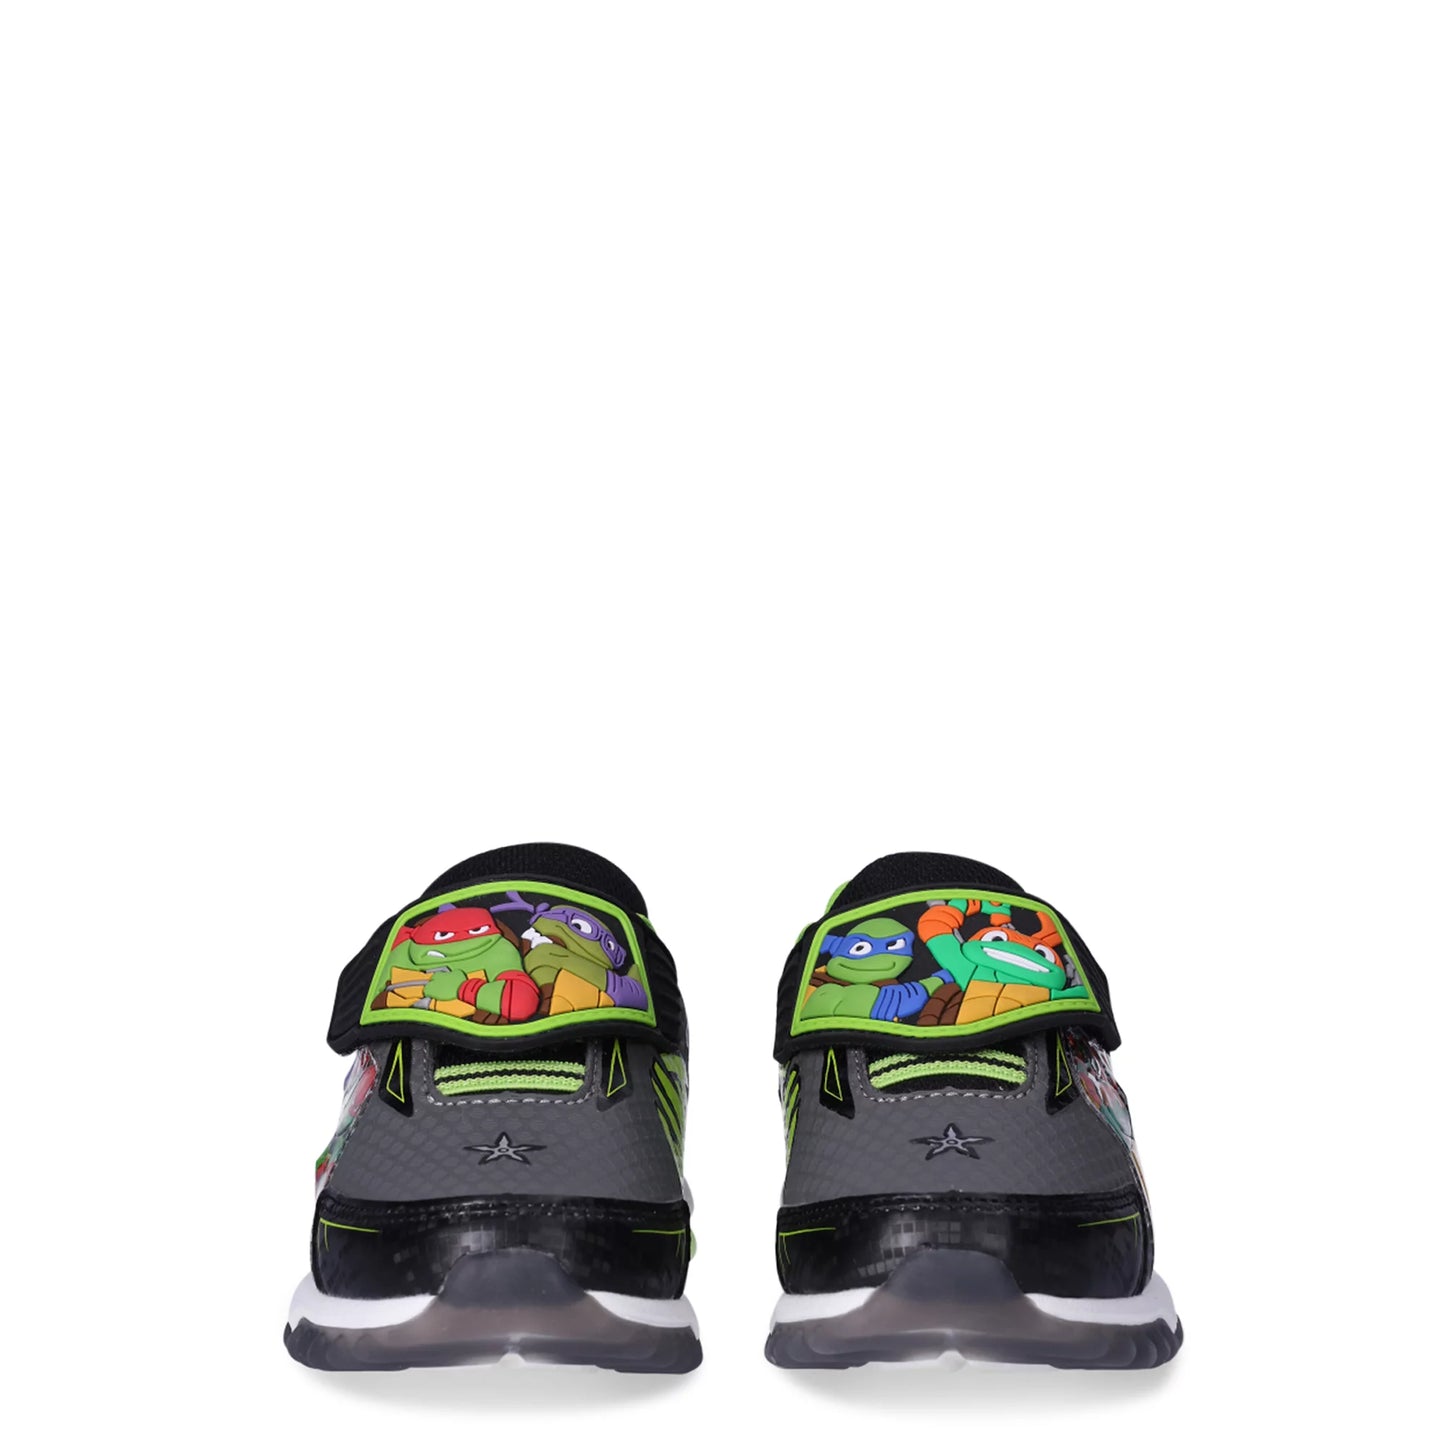 Teenage Mutant Ninja Turtles Toddler Boy Slip On Sneakers